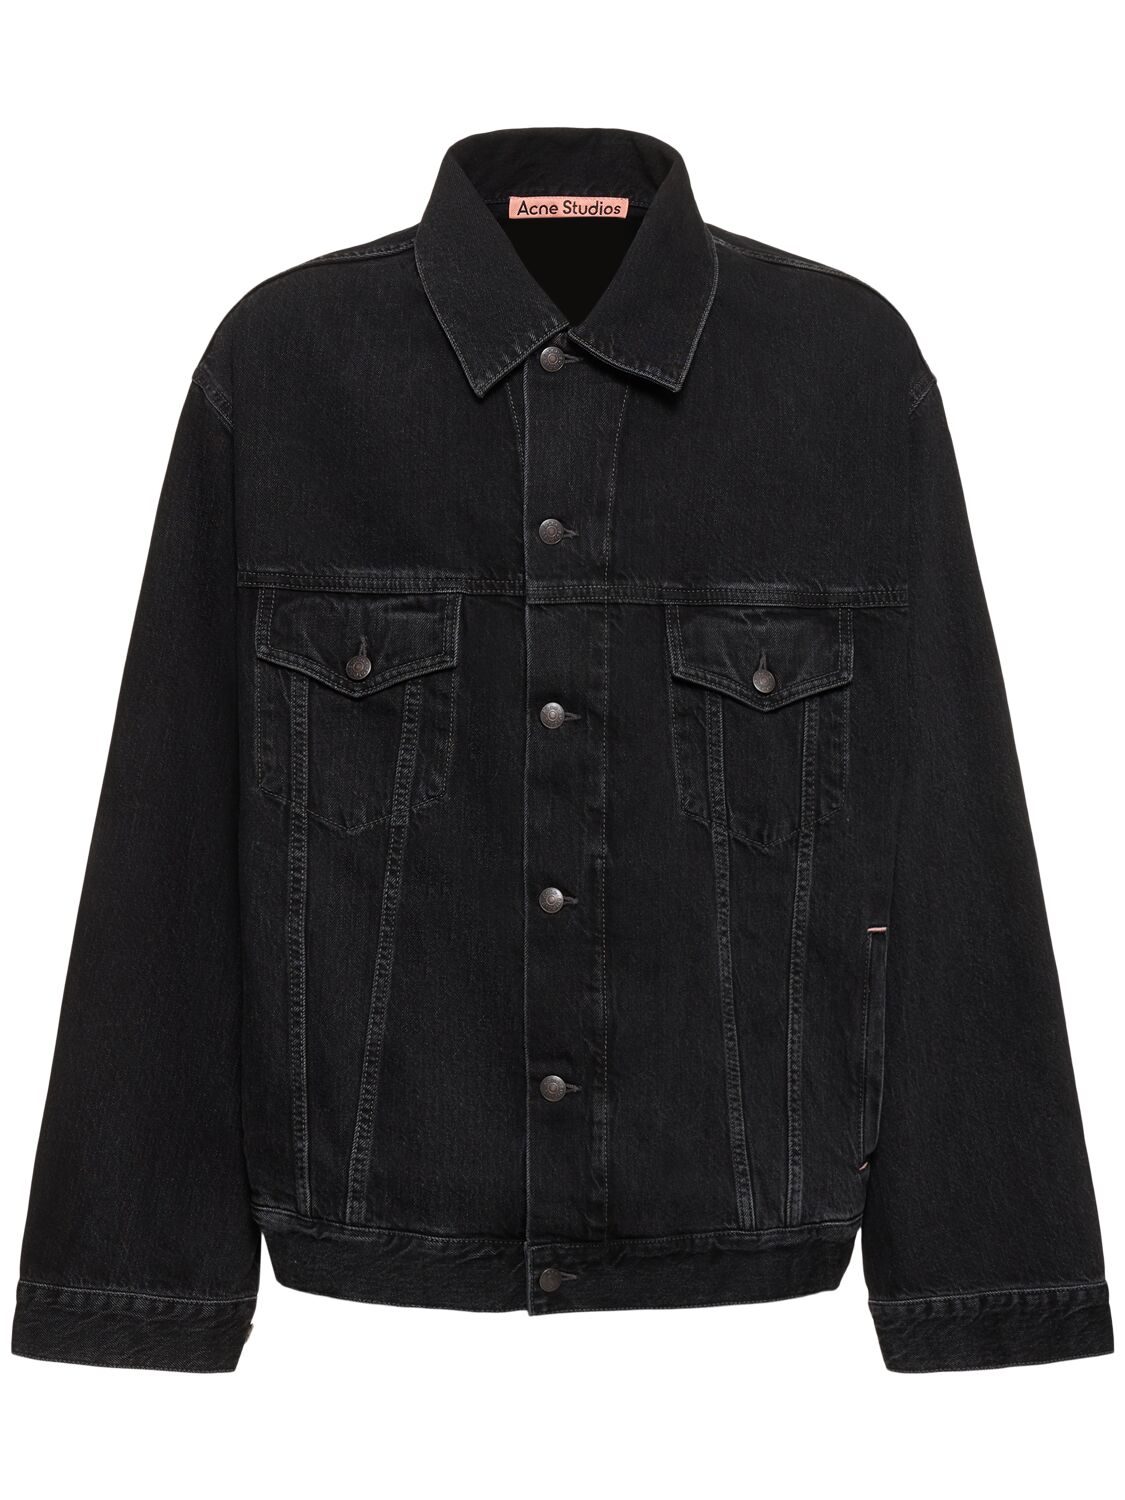 Acne Studios Robert Vintage Denim Jacket In Black